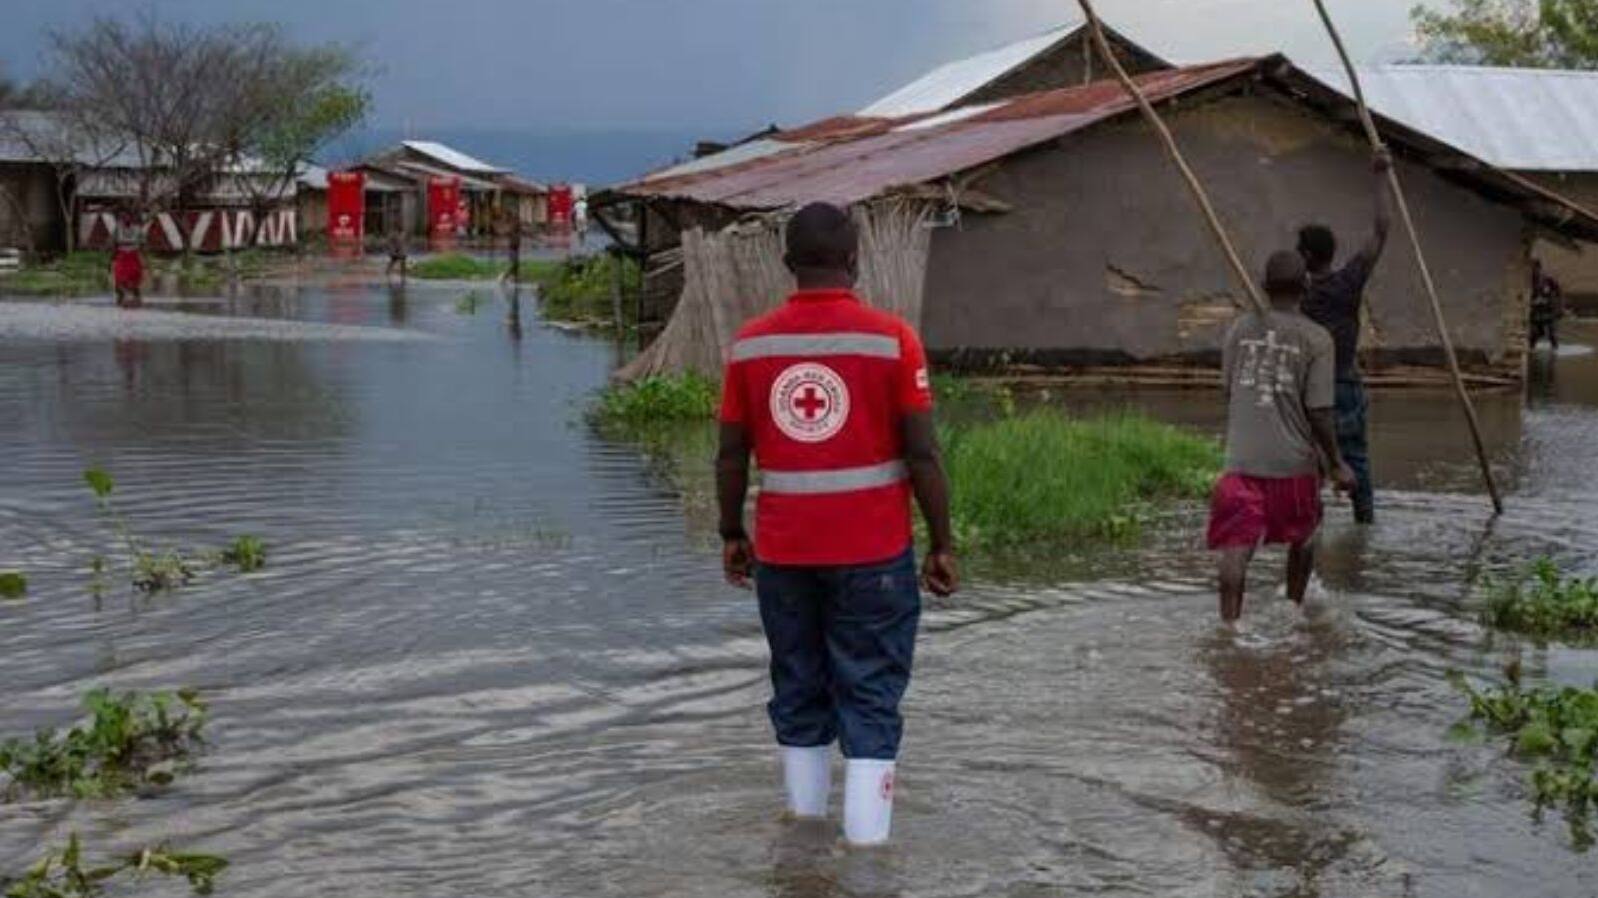 Kenya Floods cause widespread devastation in Nairobi